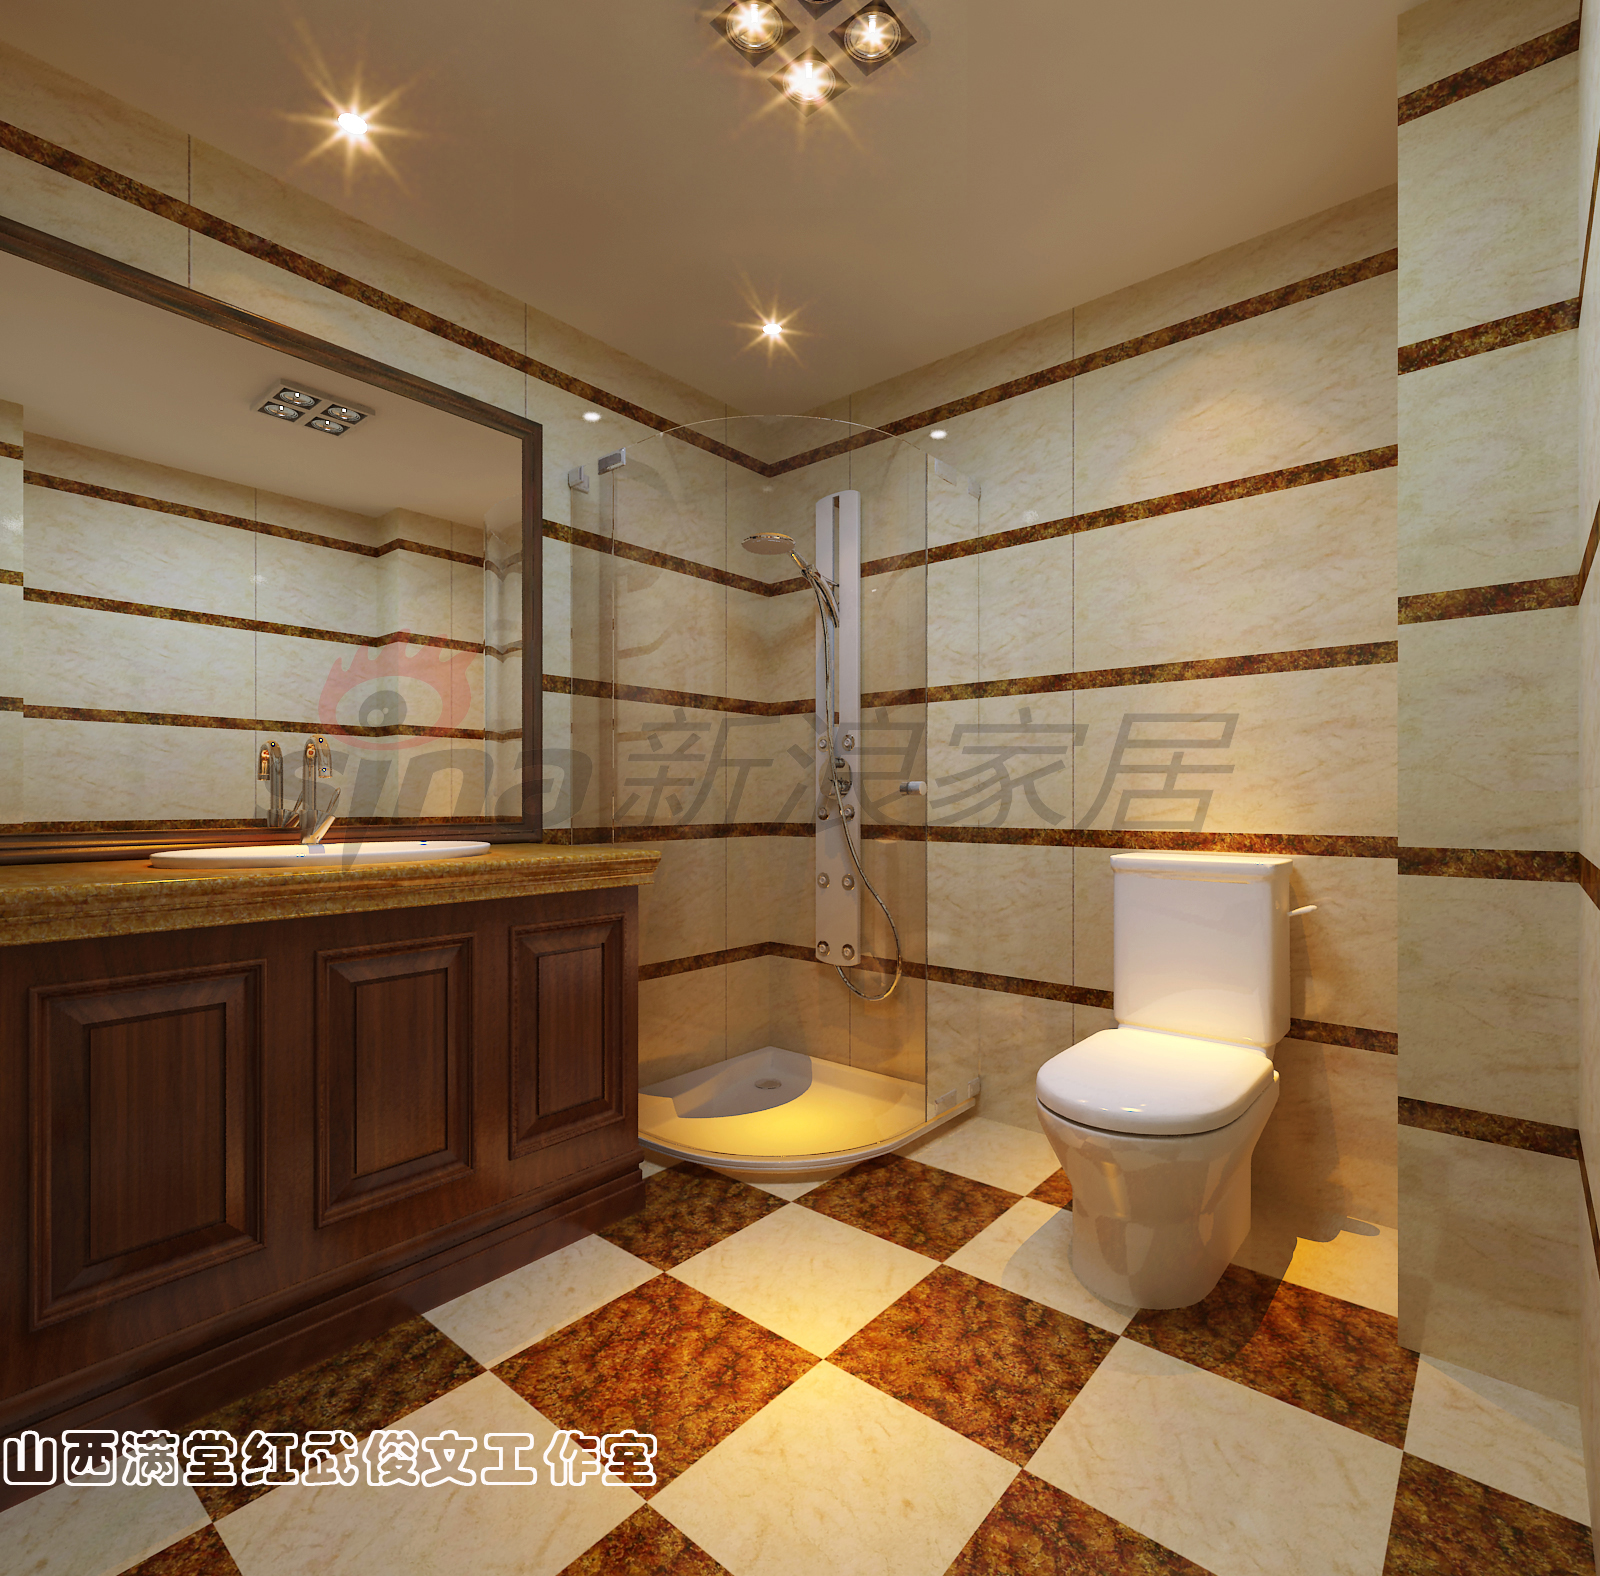 简约 欧式 卫生间图片来自满堂红设计师武俊文在长治别墅的分享